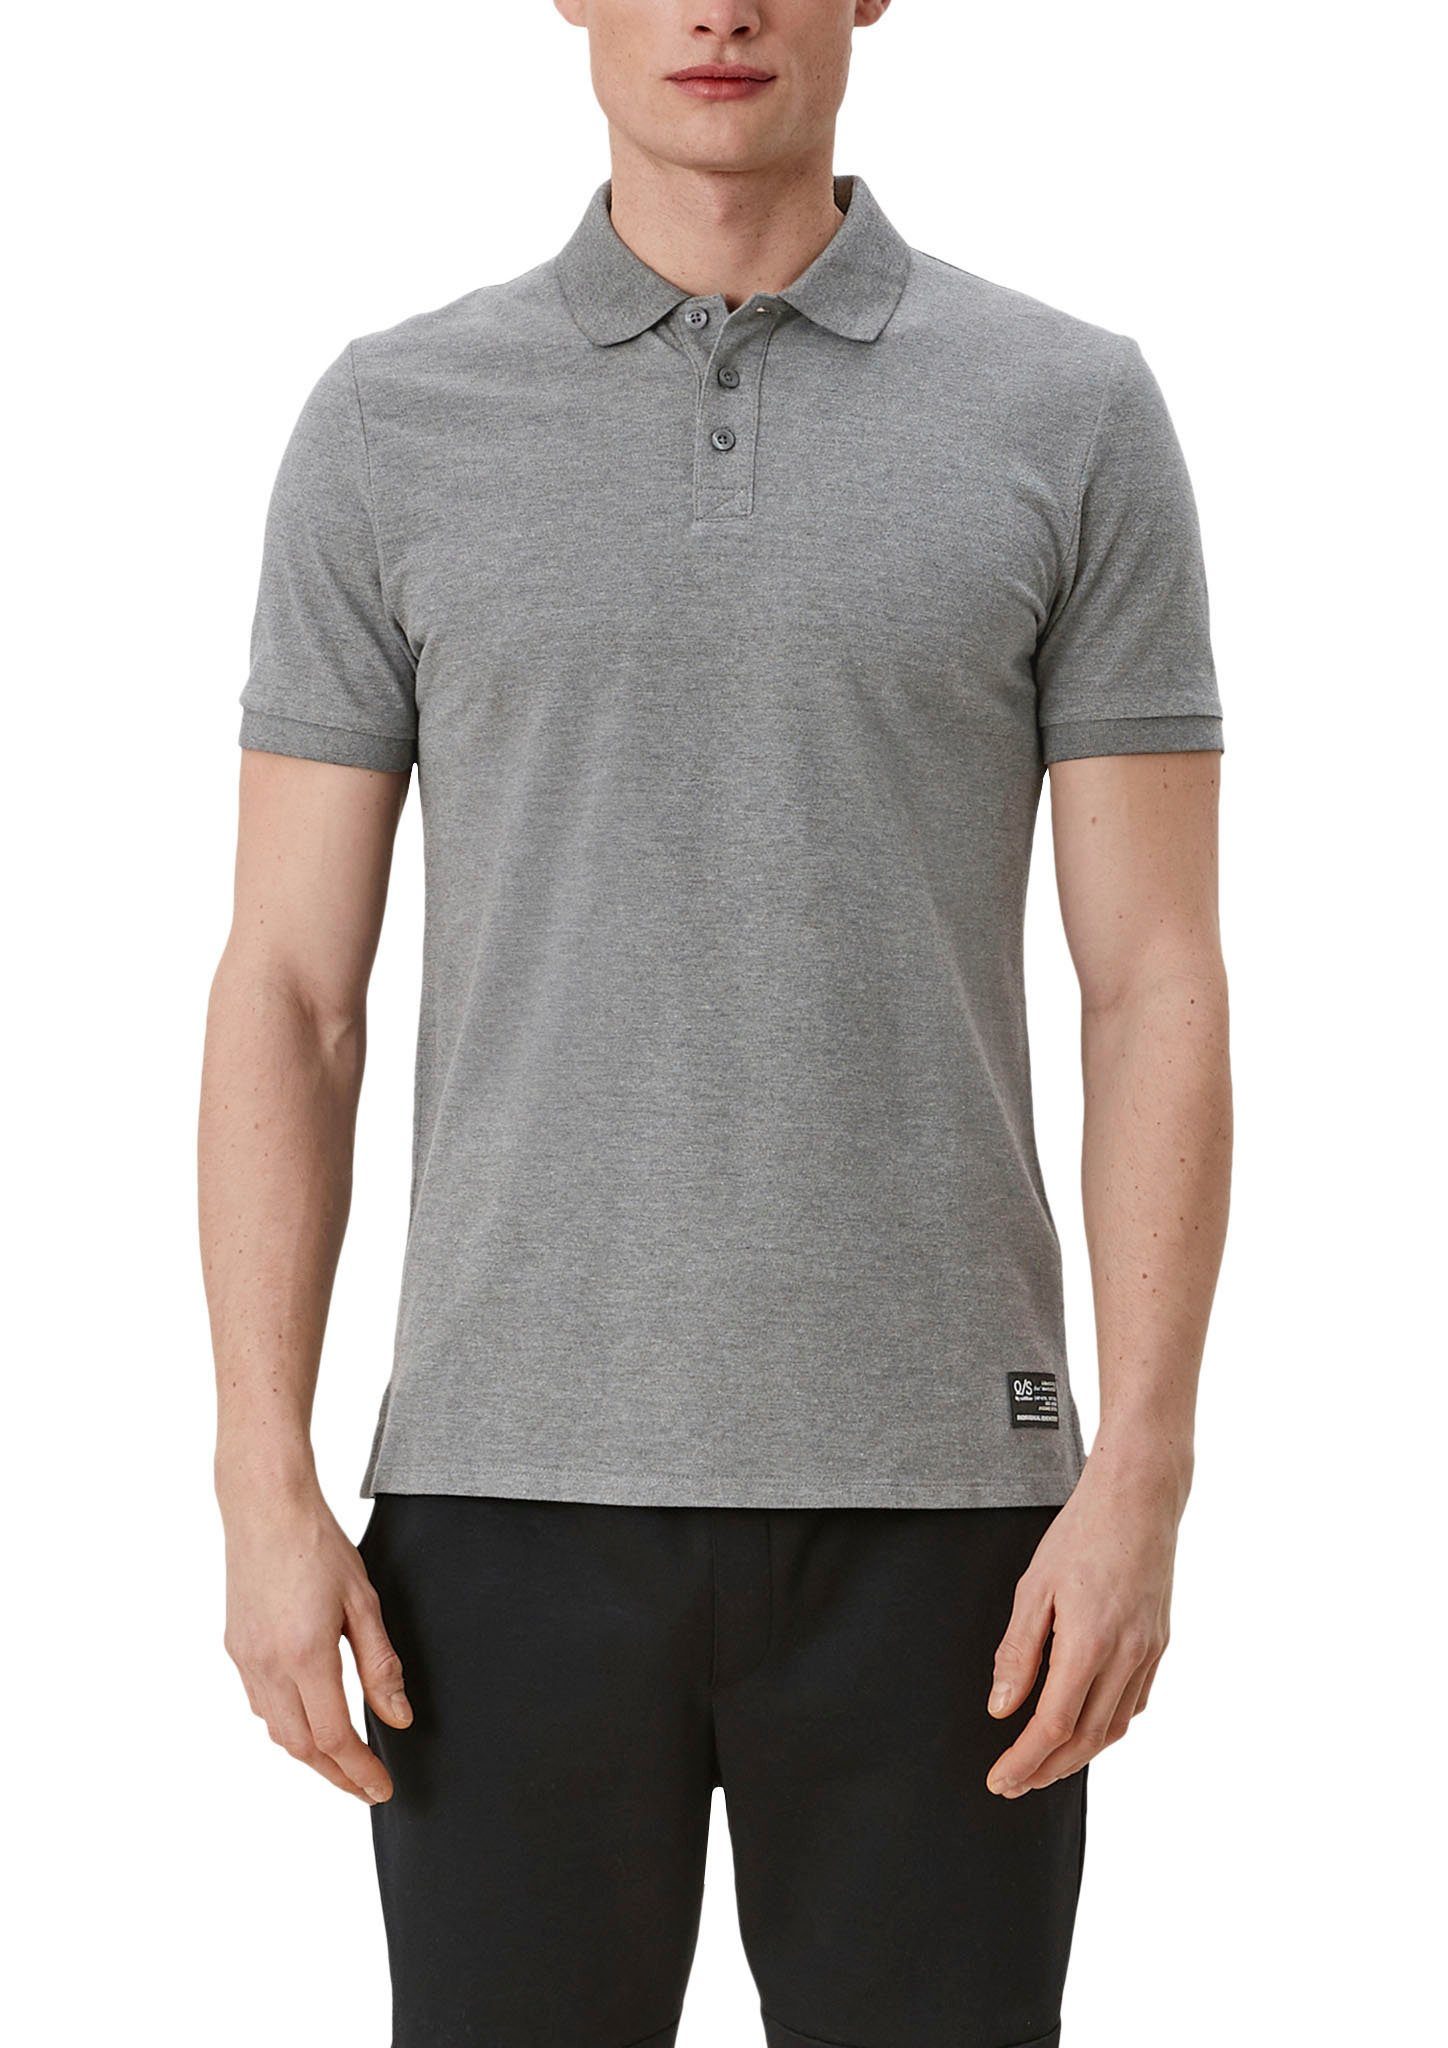 QS Poloshirt Einschnitte an den Seiten grey/black